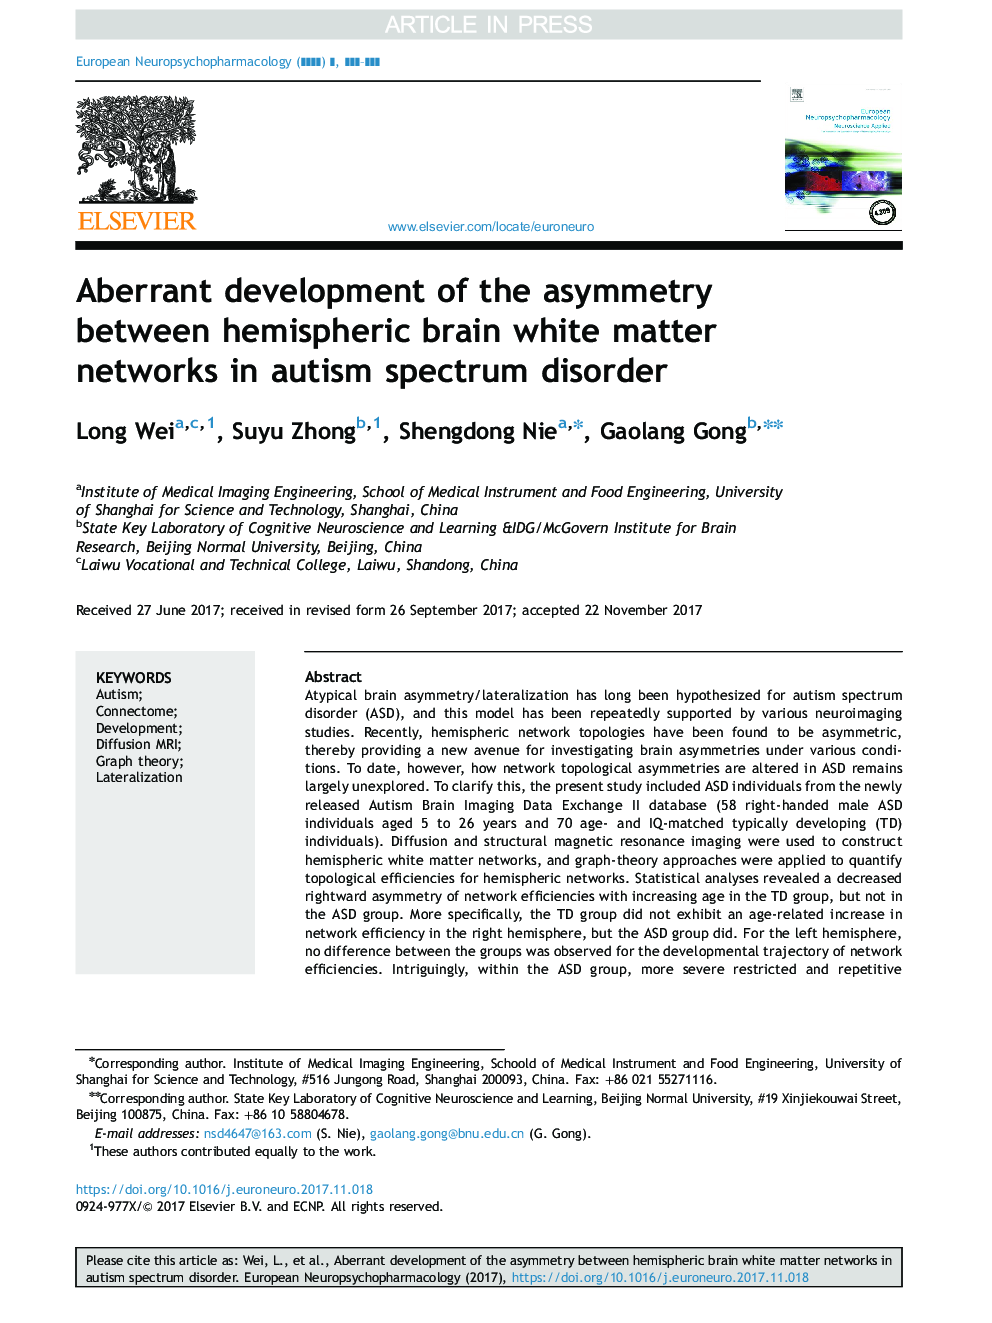 توسعه غیرمستقیم عدم تقارن بین شبکه های ماده سفید مغز نیمکره ای در اختلال طیف اوتیسم 